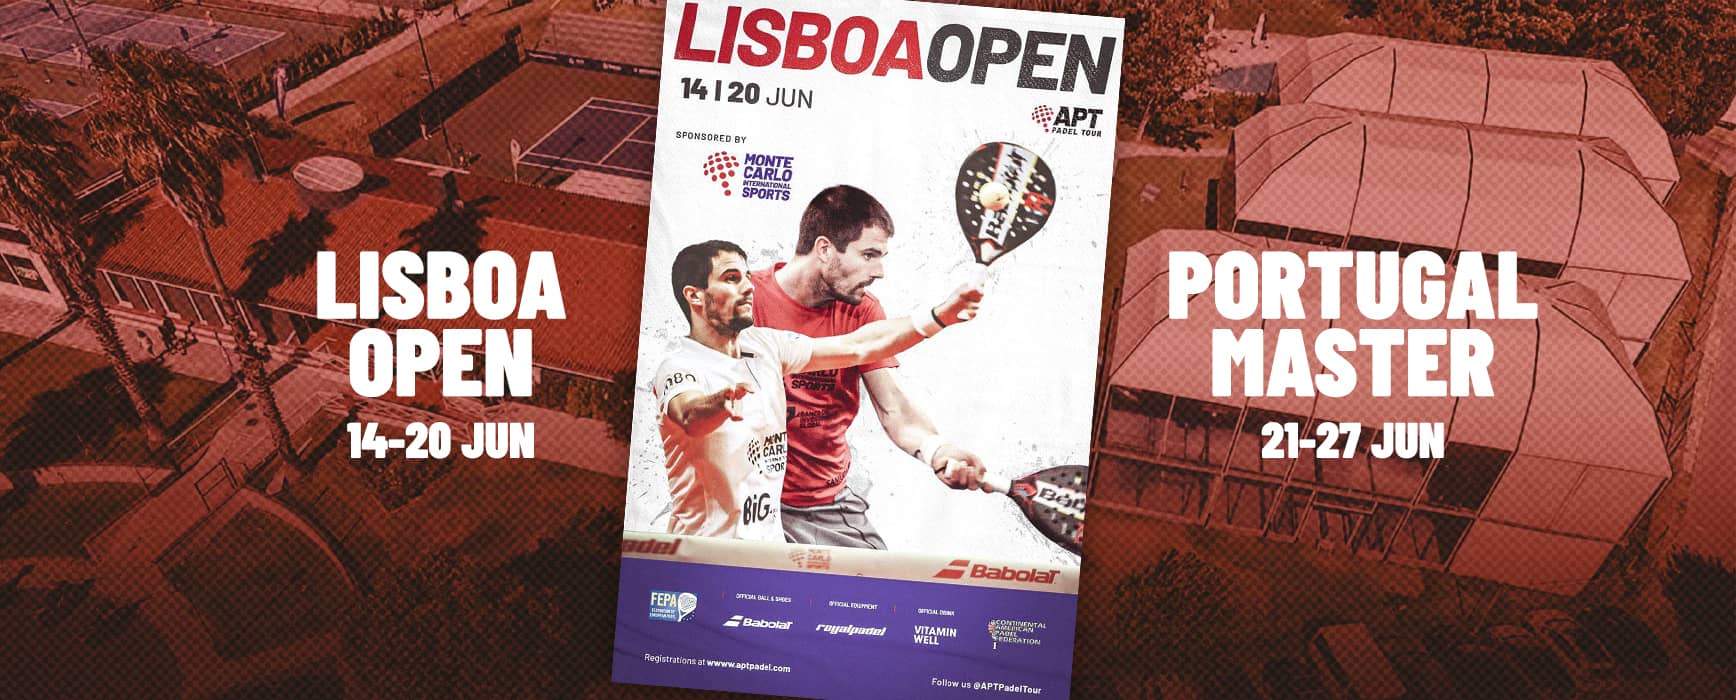 ¡Abiertas las inscripciones del Lisboa Open y del Portugal Master!